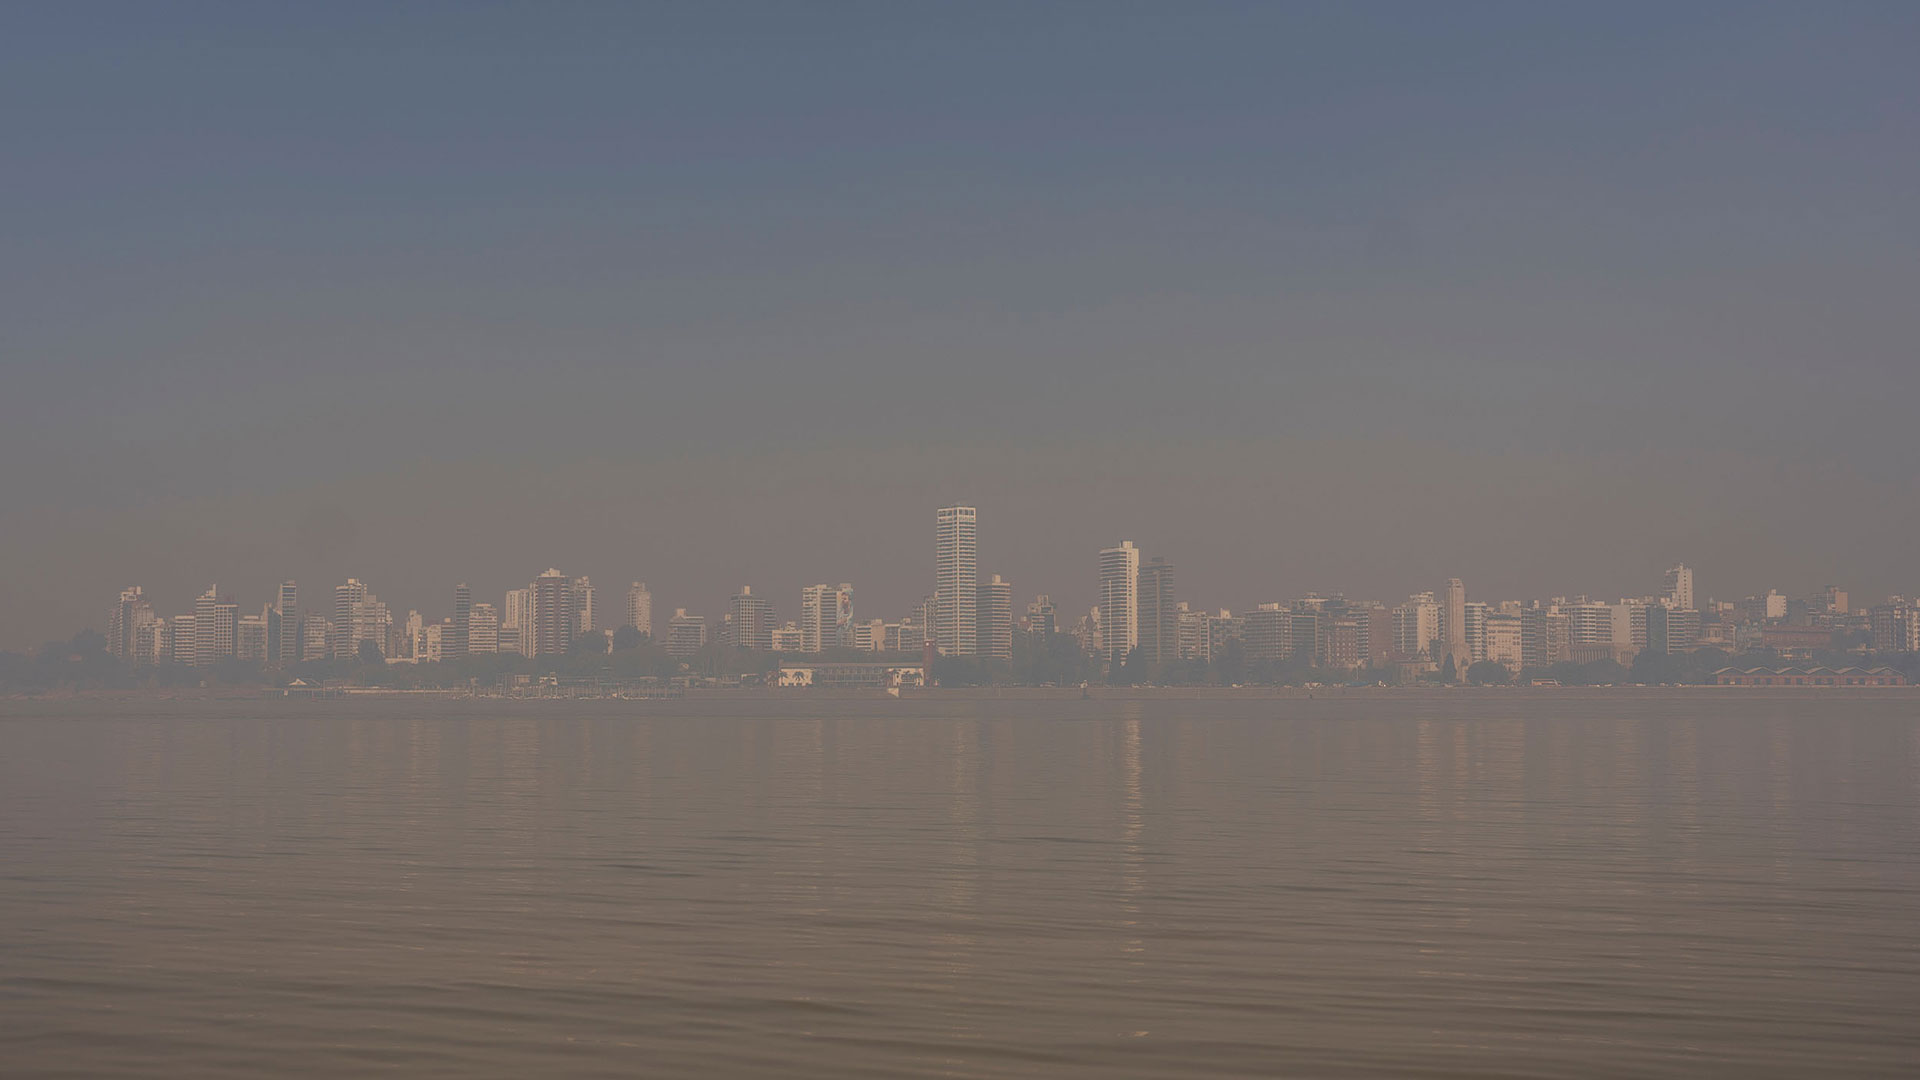 “No es neblina, no son nubes: es humo”, coinciden los habitantes de Rosario (Foto: Sebastián López Brachs/Greenpeace)